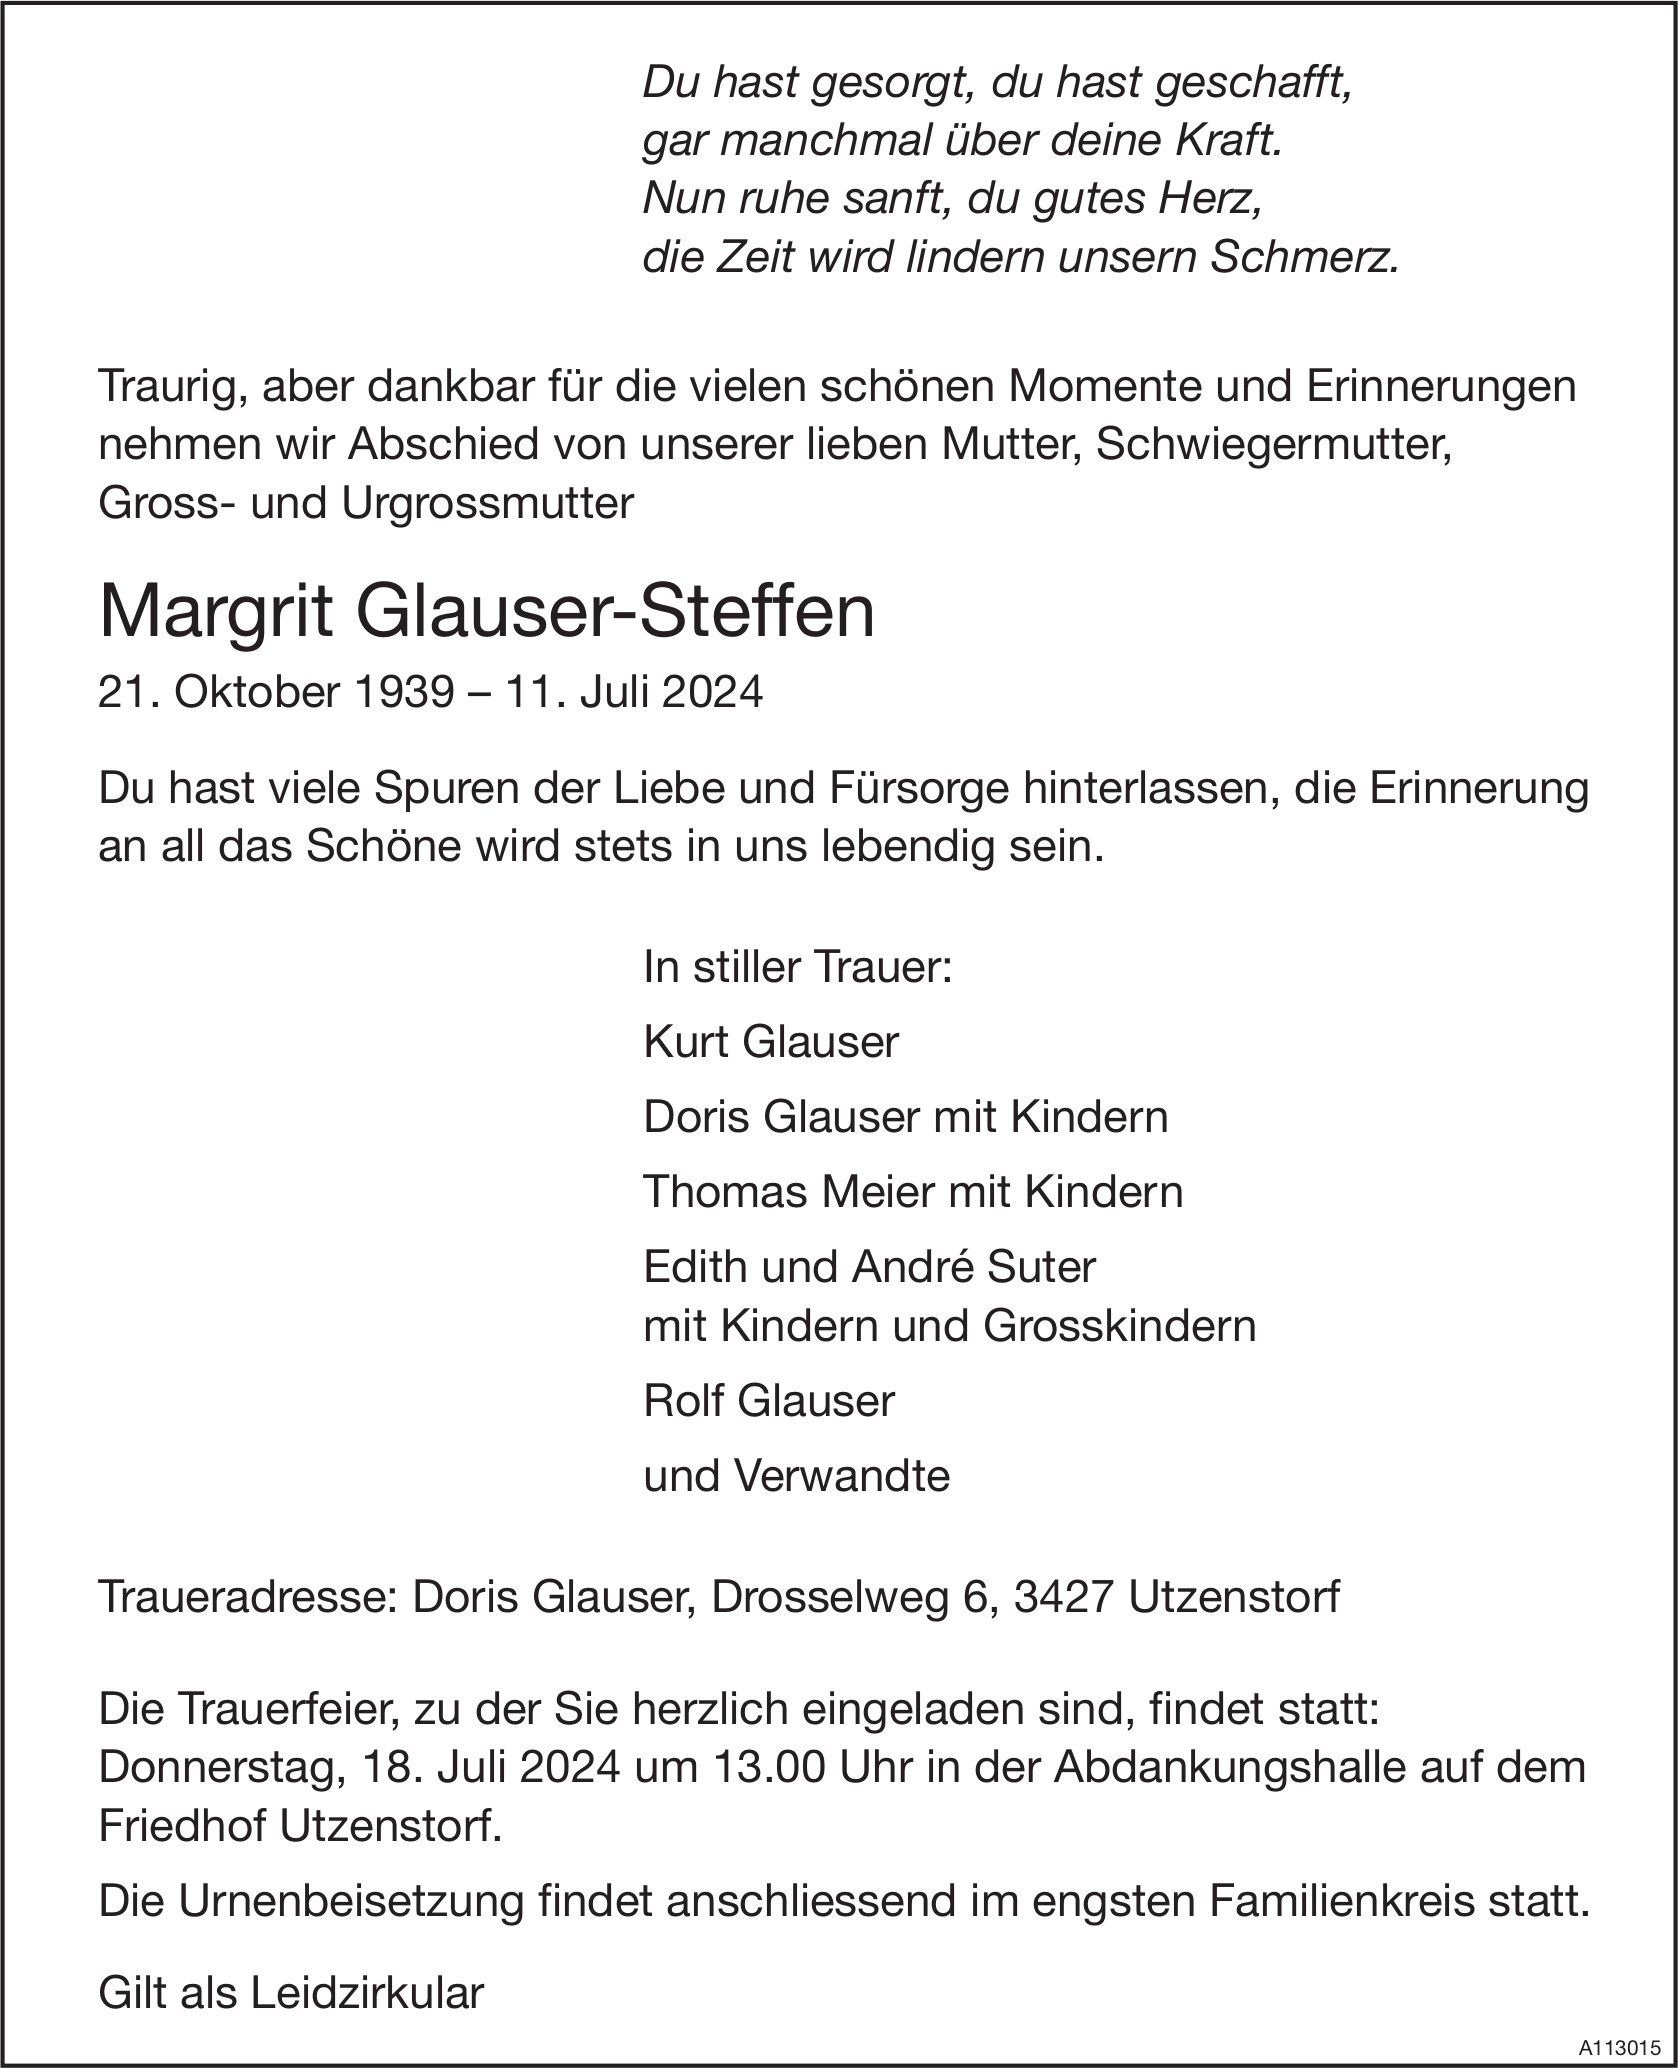 Margrit Glauser-Steffen, Juli 2024 / TA